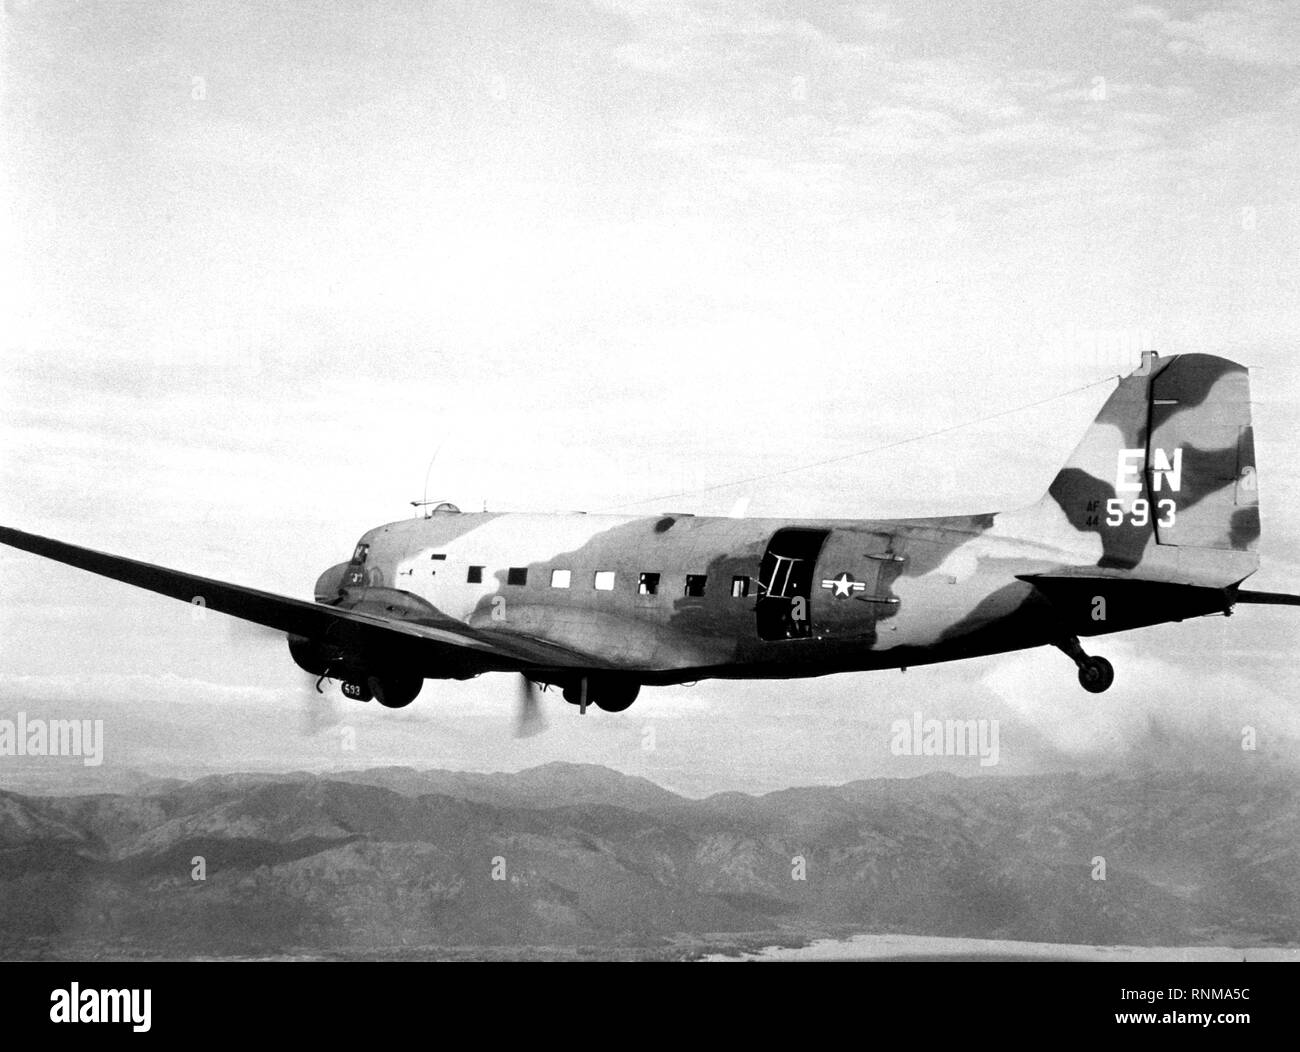 1967 - STATI UNITI Air Force AC-47 Dragon velivolo vola missioni oltre il Sud del Vietnam a sostegno di Allied avamposti. Foto Stock